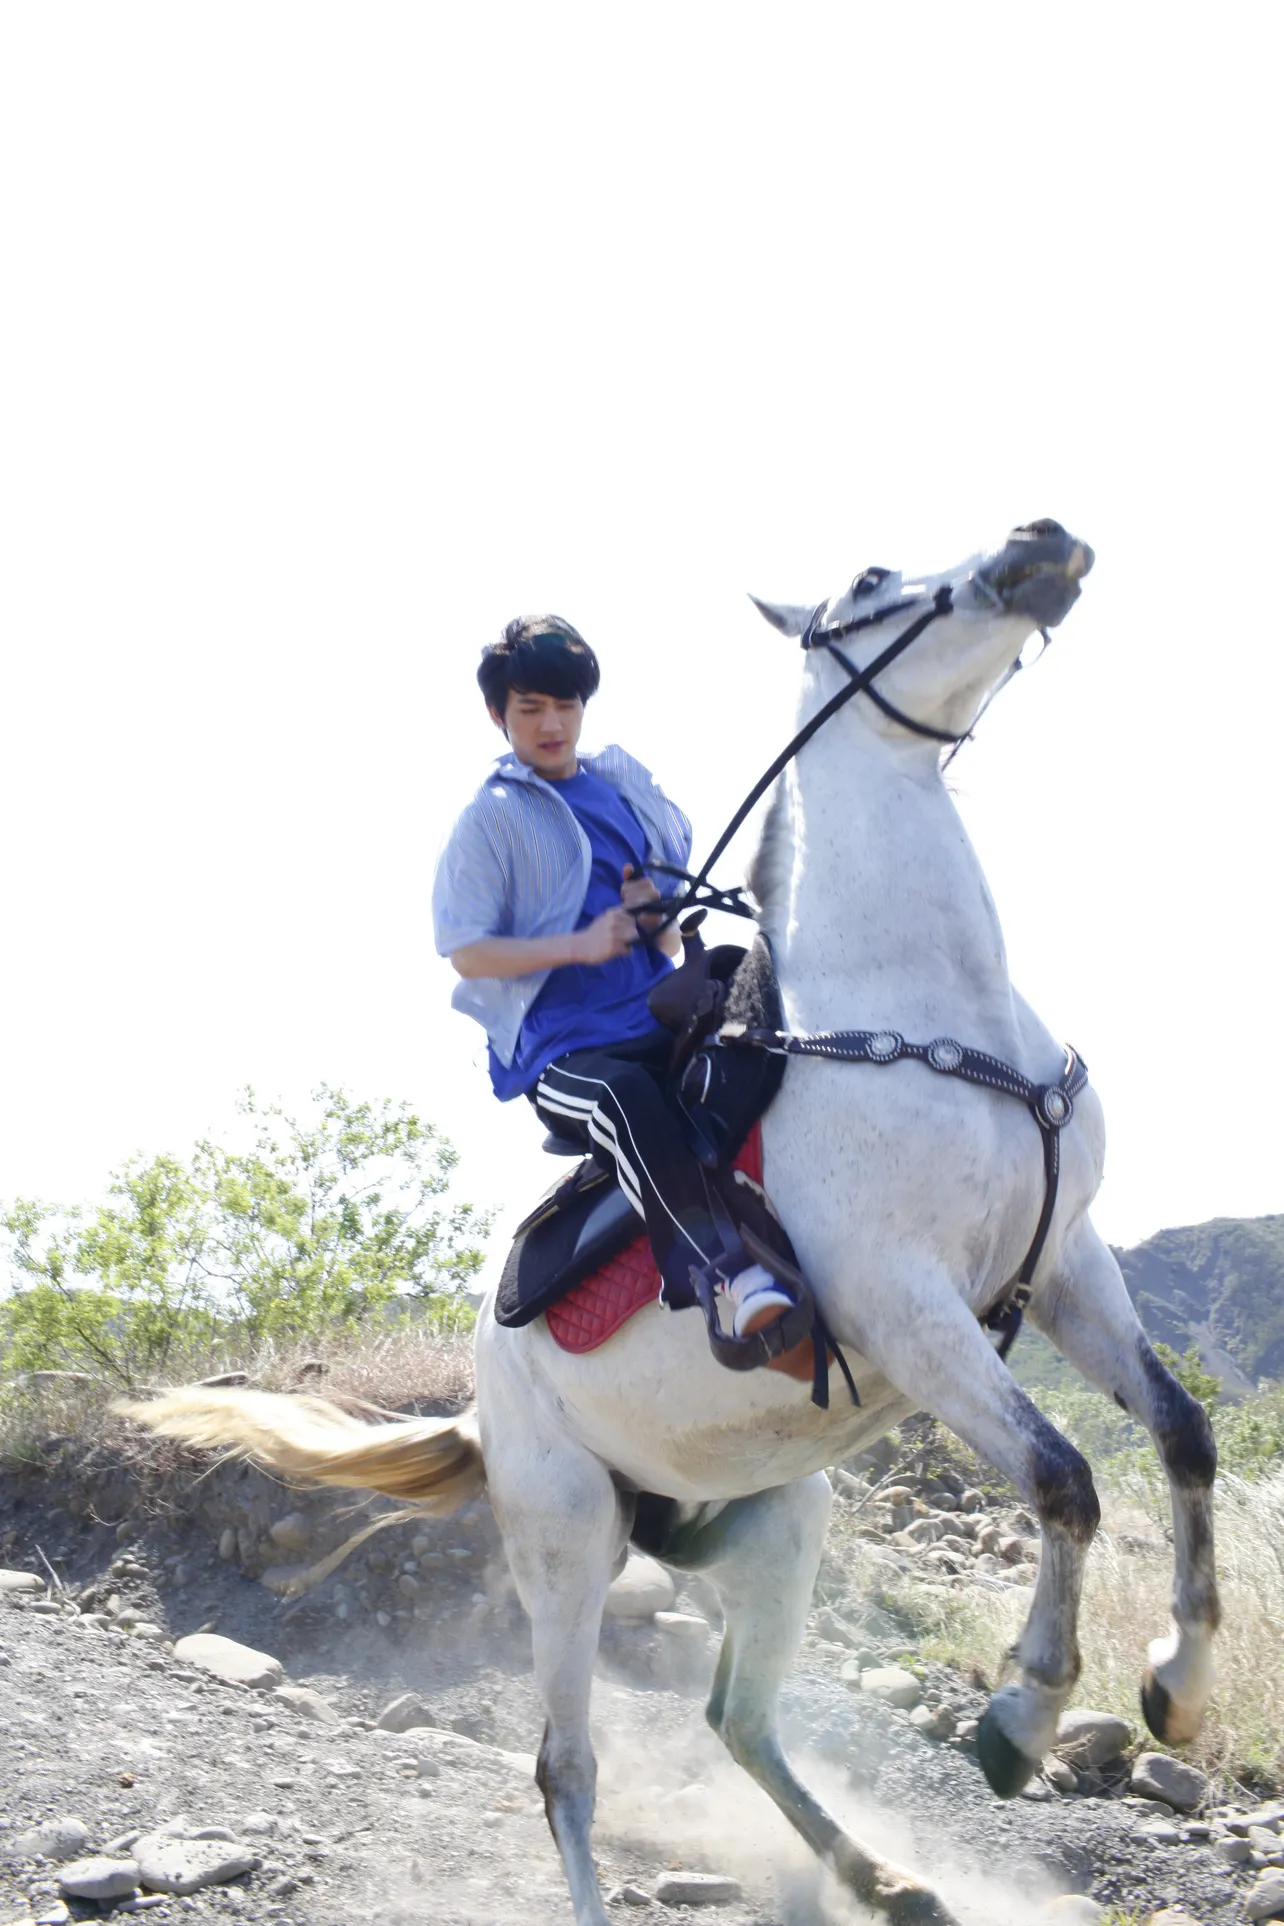 大河ファンタジー「精霊の守り人」(NHK総合)で習得した乗馬も披露